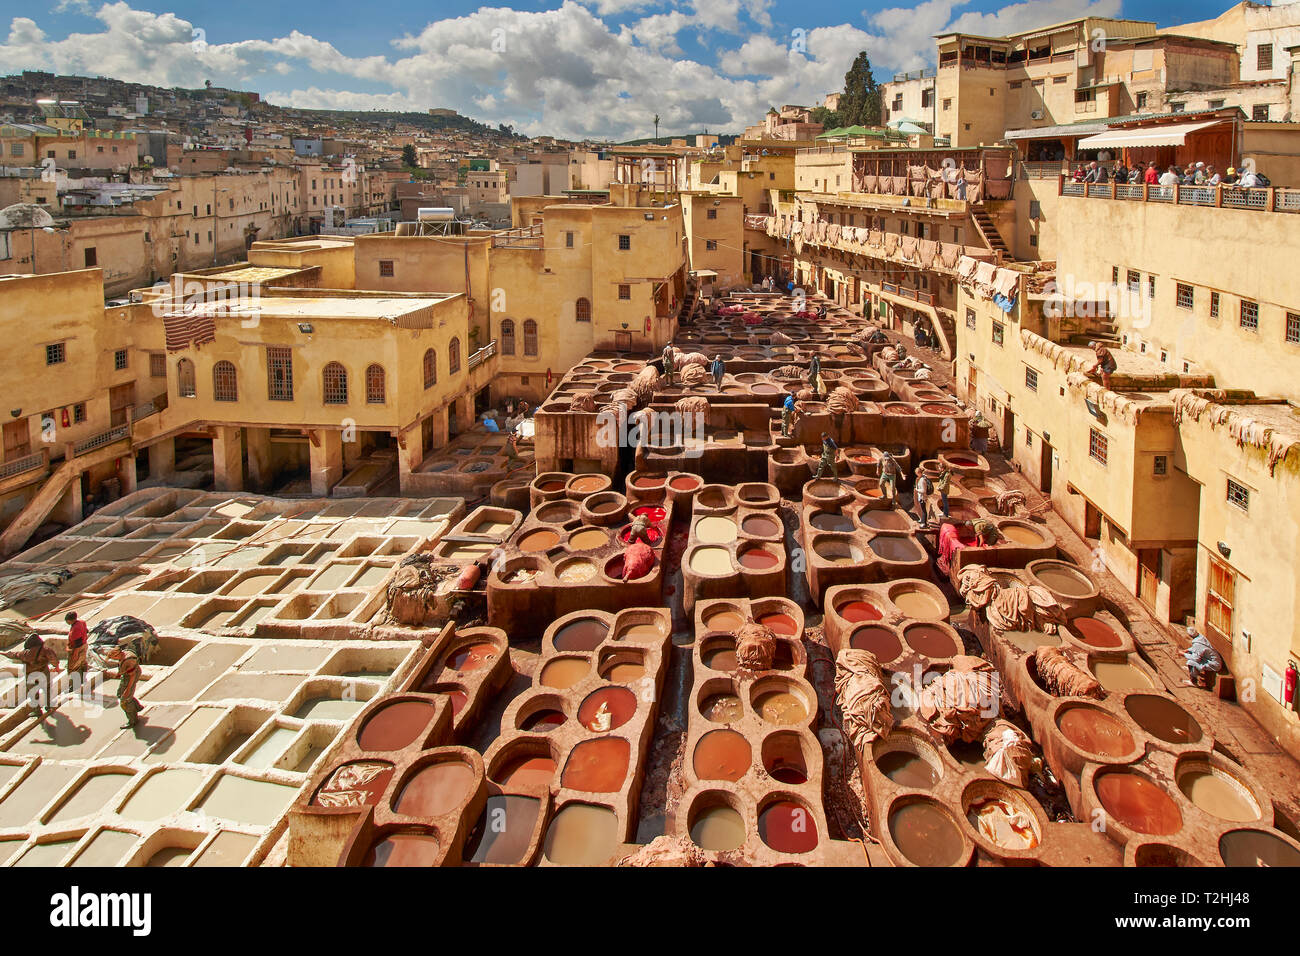 Il Marocco Fes Medina La conceria CHOUARA con pelli in vasche con pigmenti colorati e turisti guardano da un balcone Foto Stock